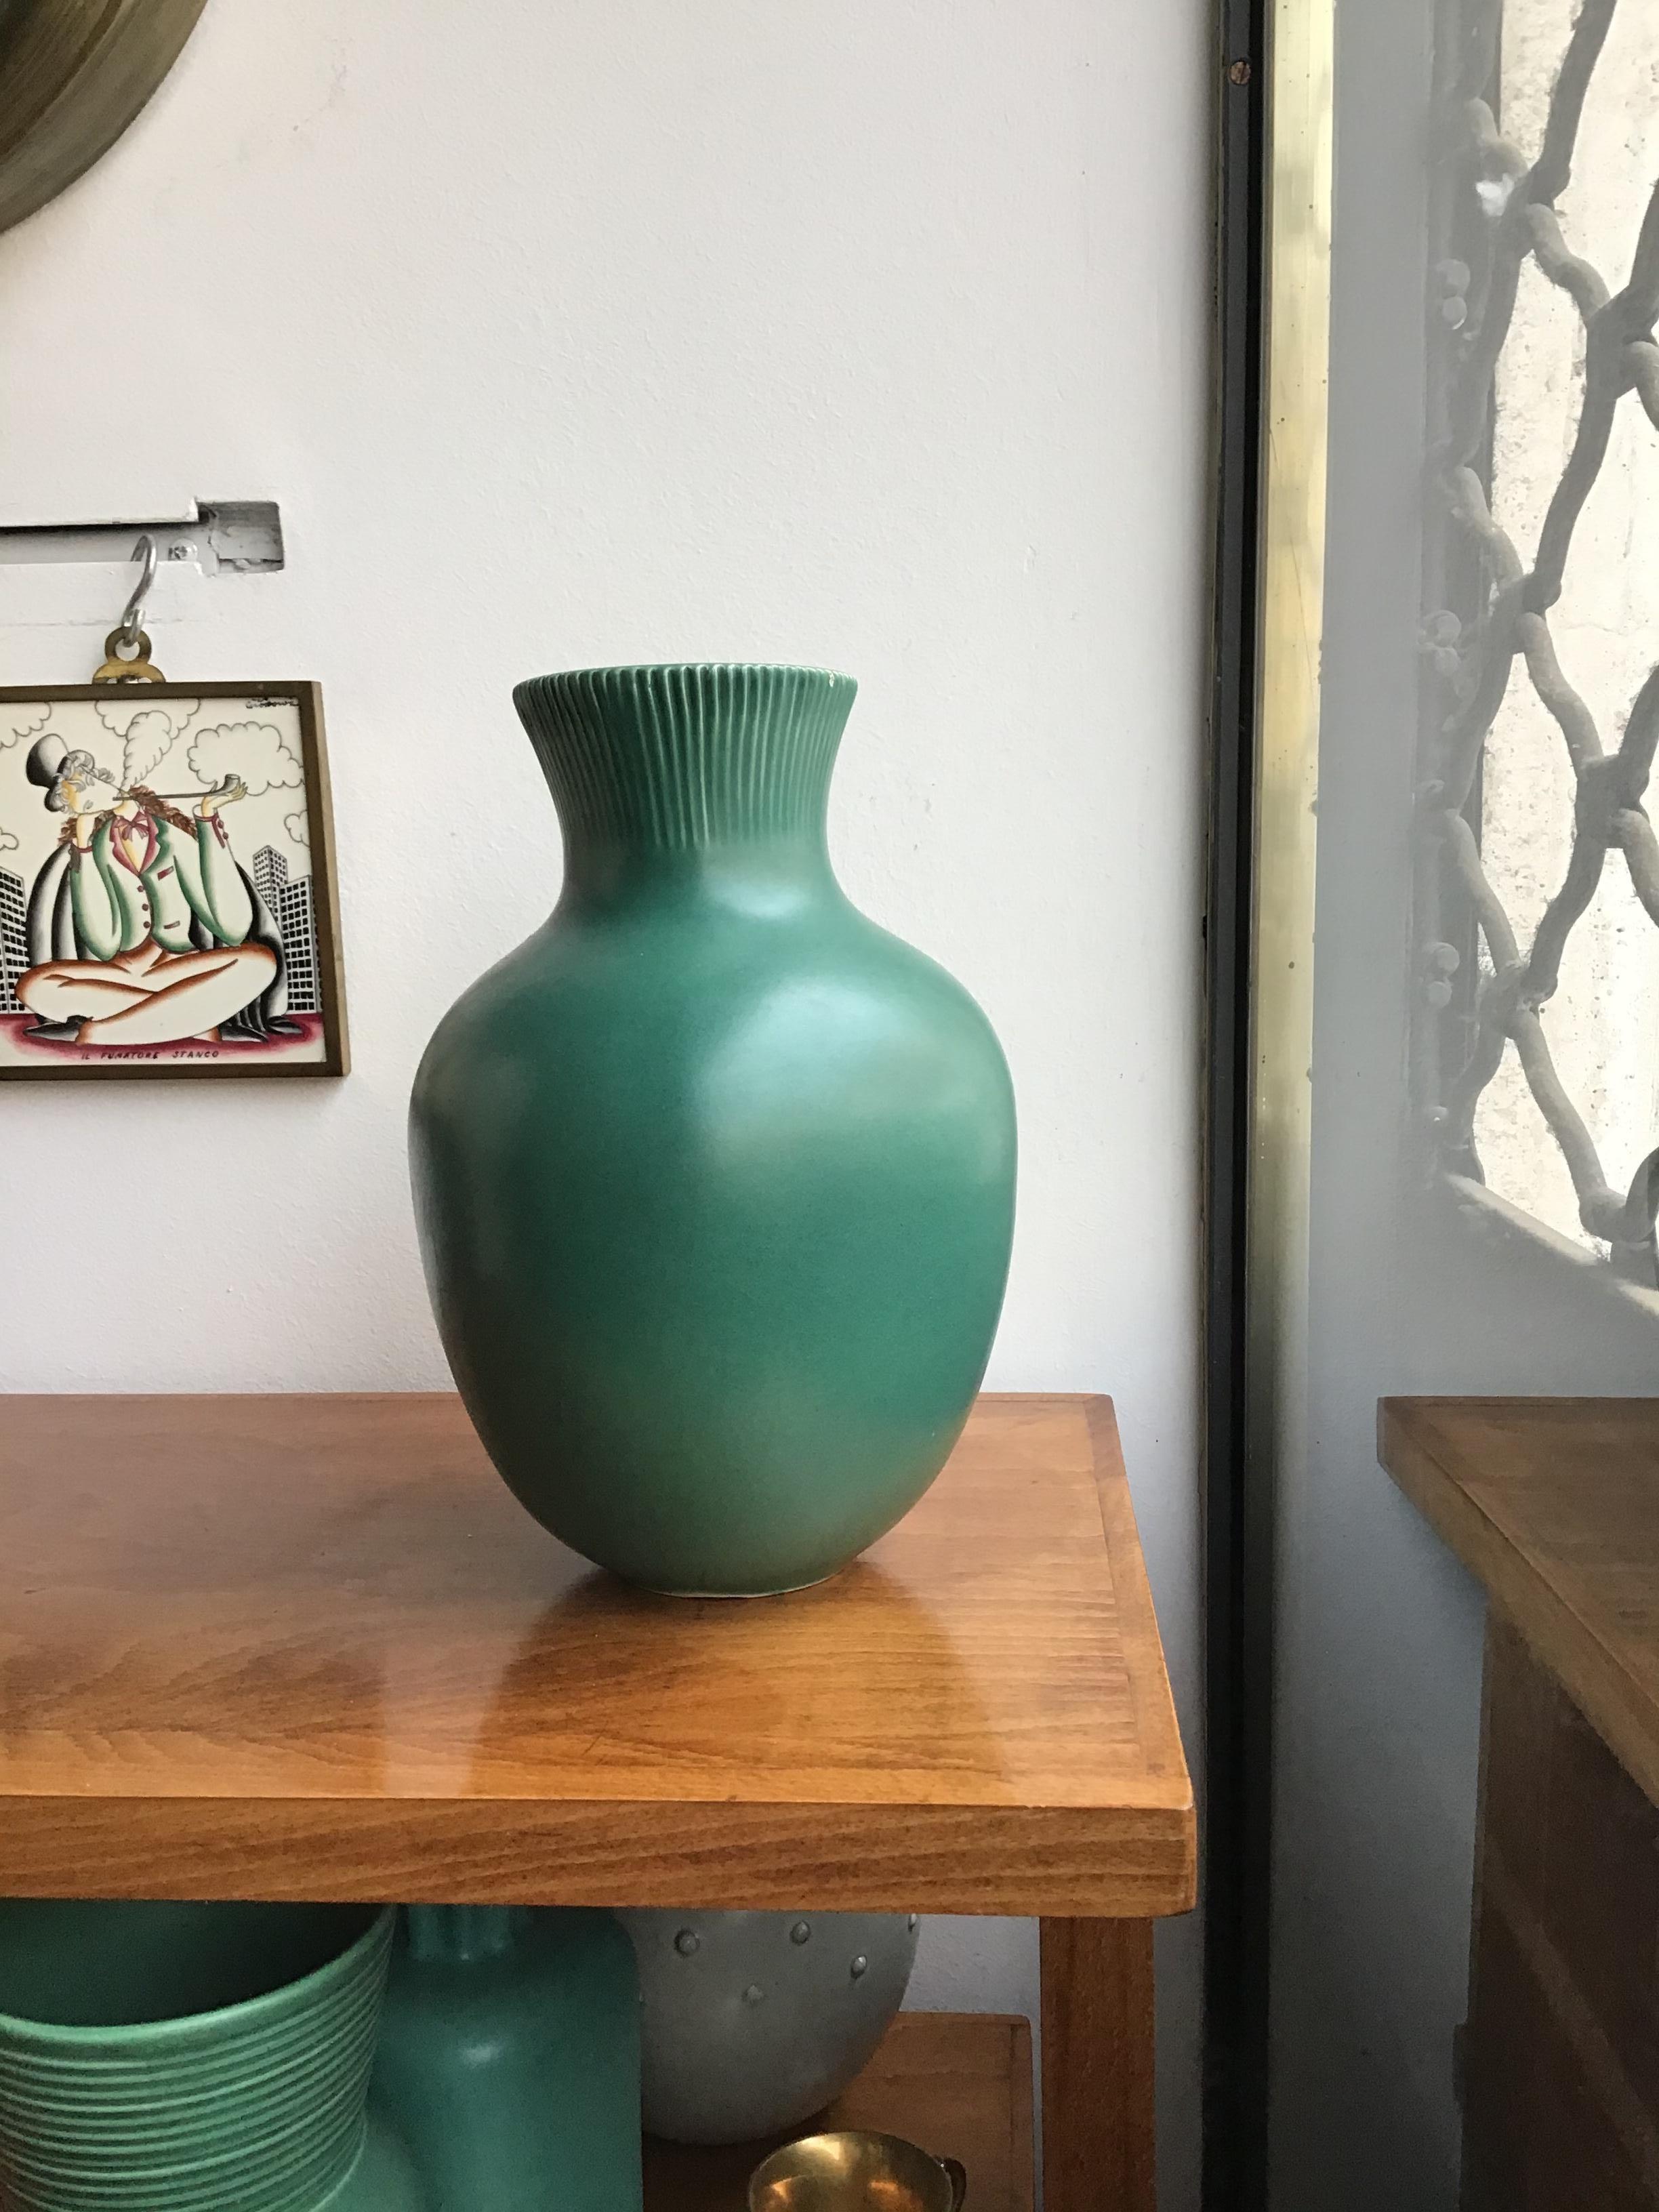 Italian Richard Ginori Giovanni Gariboldi Vase Green Ceramic 1950 Italy 